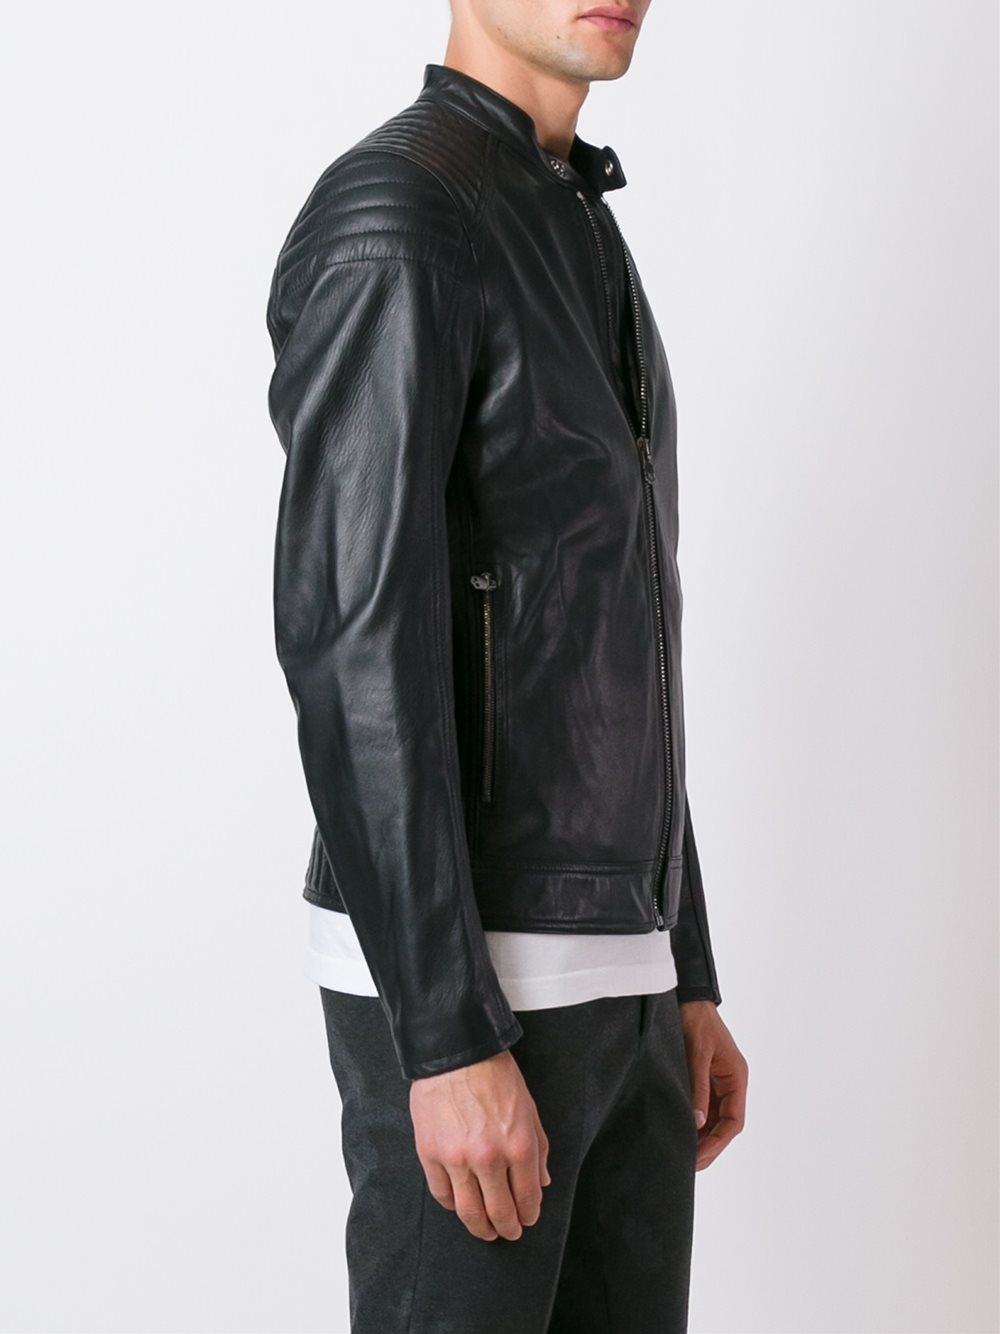 Hydrogen Zipped Leather Jacket in Black for Men - Lyst